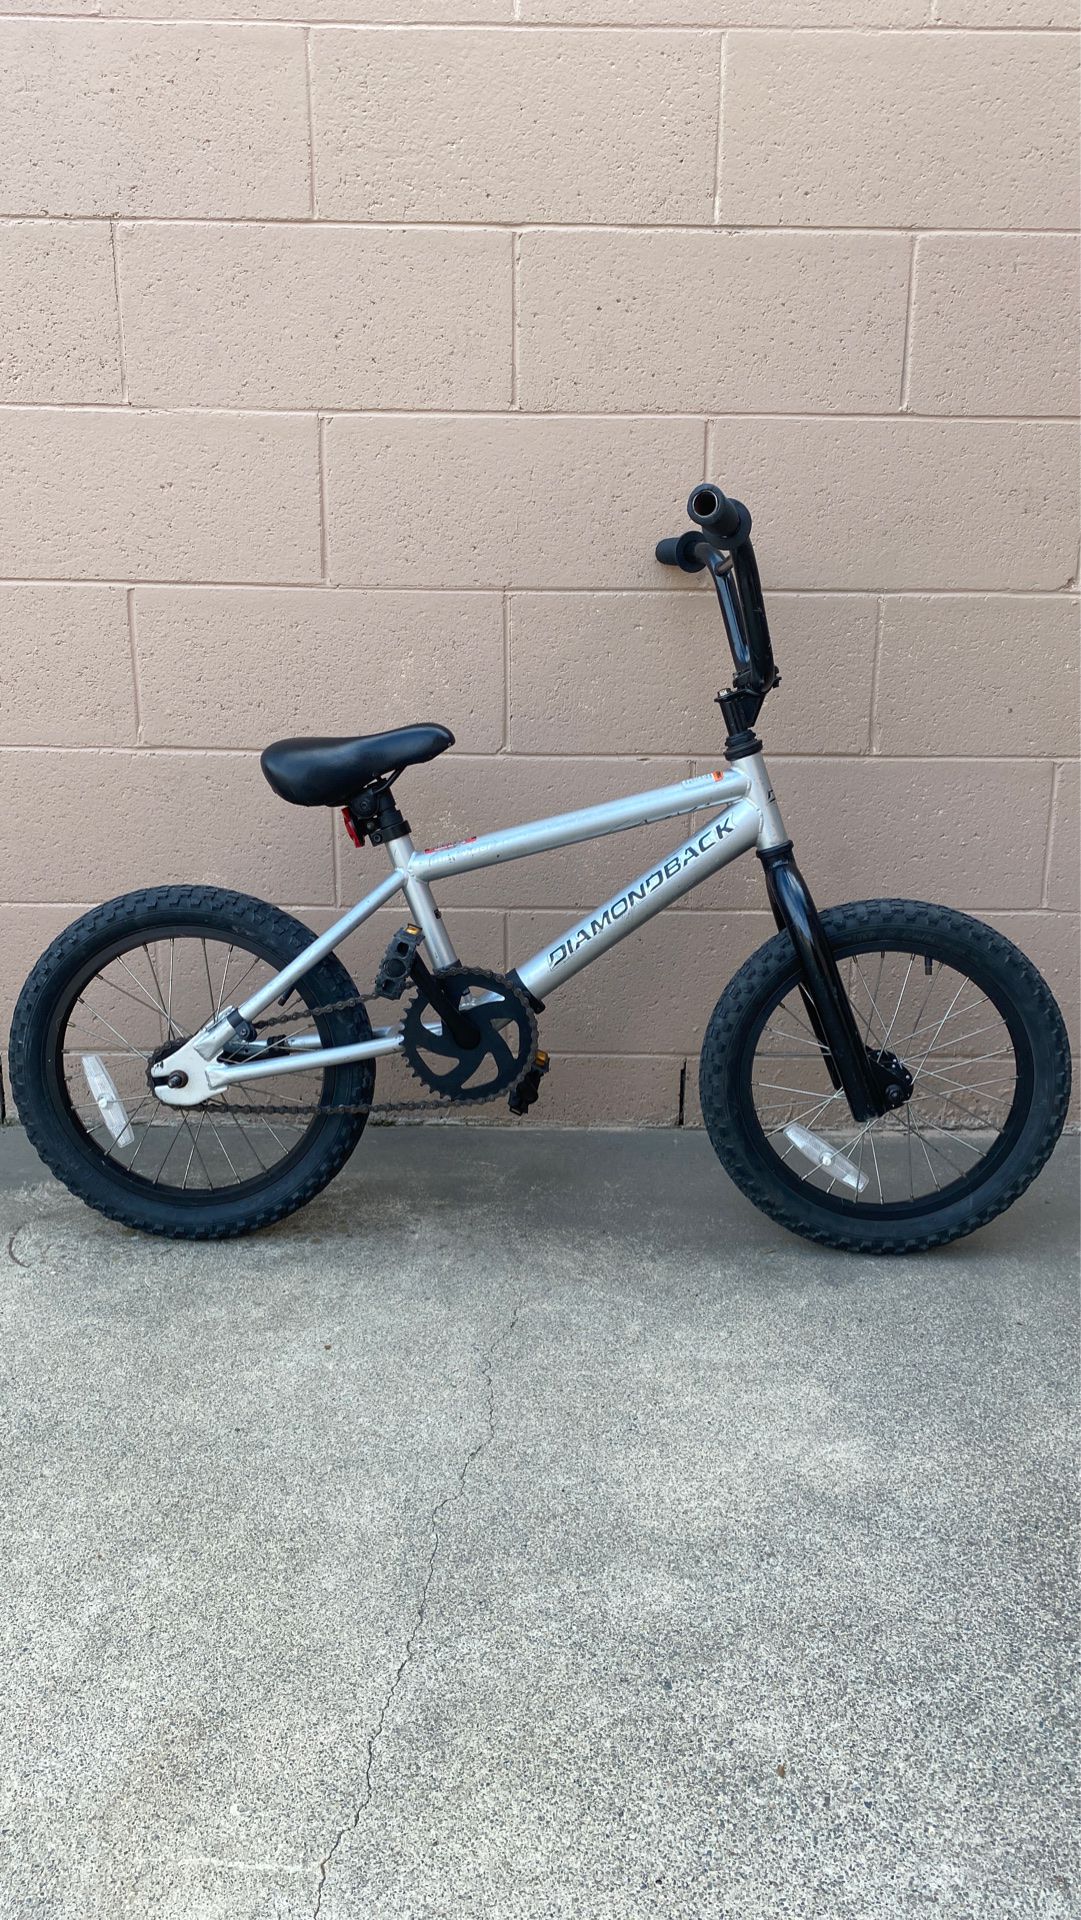 Diamond Back 16” BMX bike